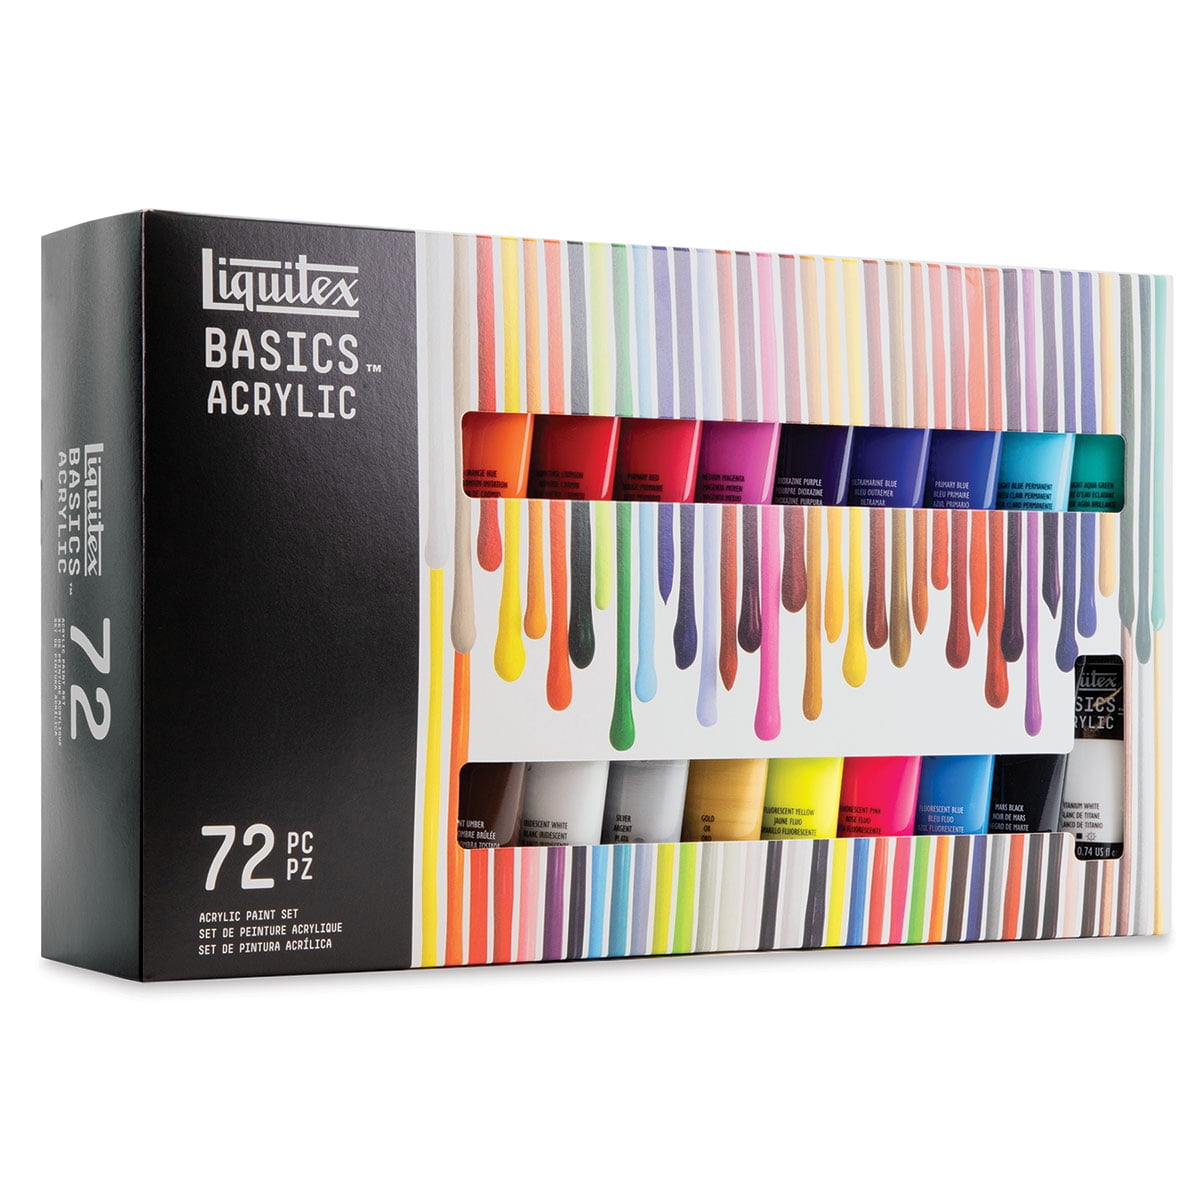  Liquitex BASICS Acrylic Paint Set, 5 x 75ml (2.4-oz